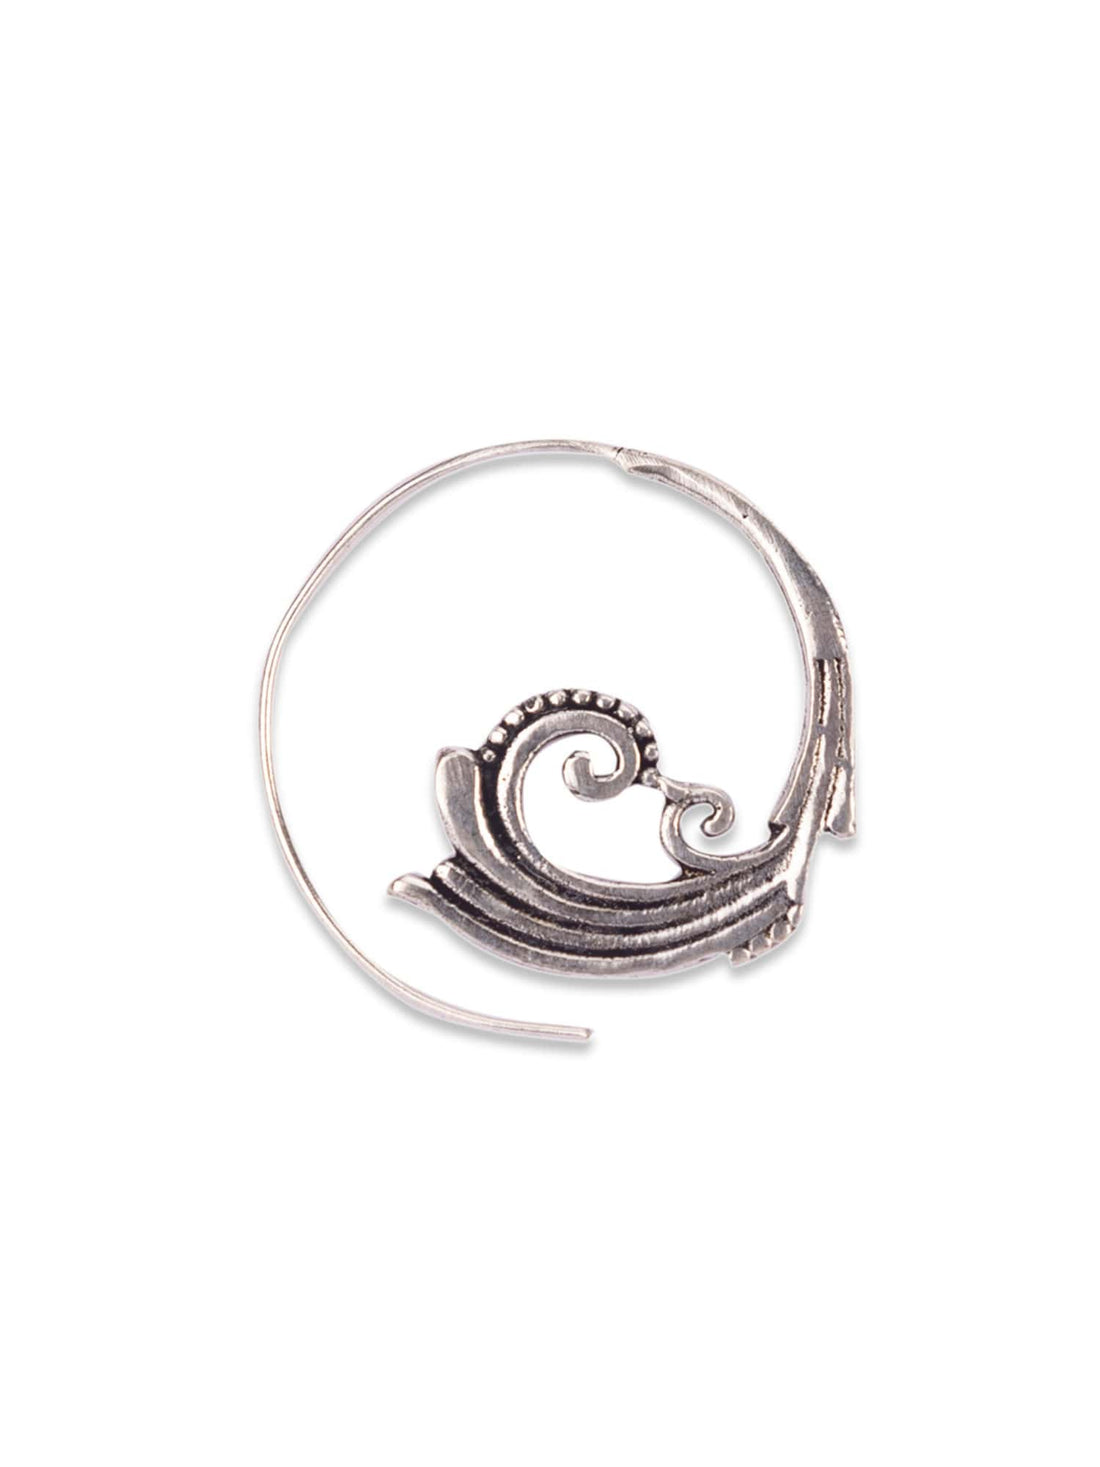 Daily Wear Hoops Earrings - Western Silver-Plated Brass Earrings By Studio One Love